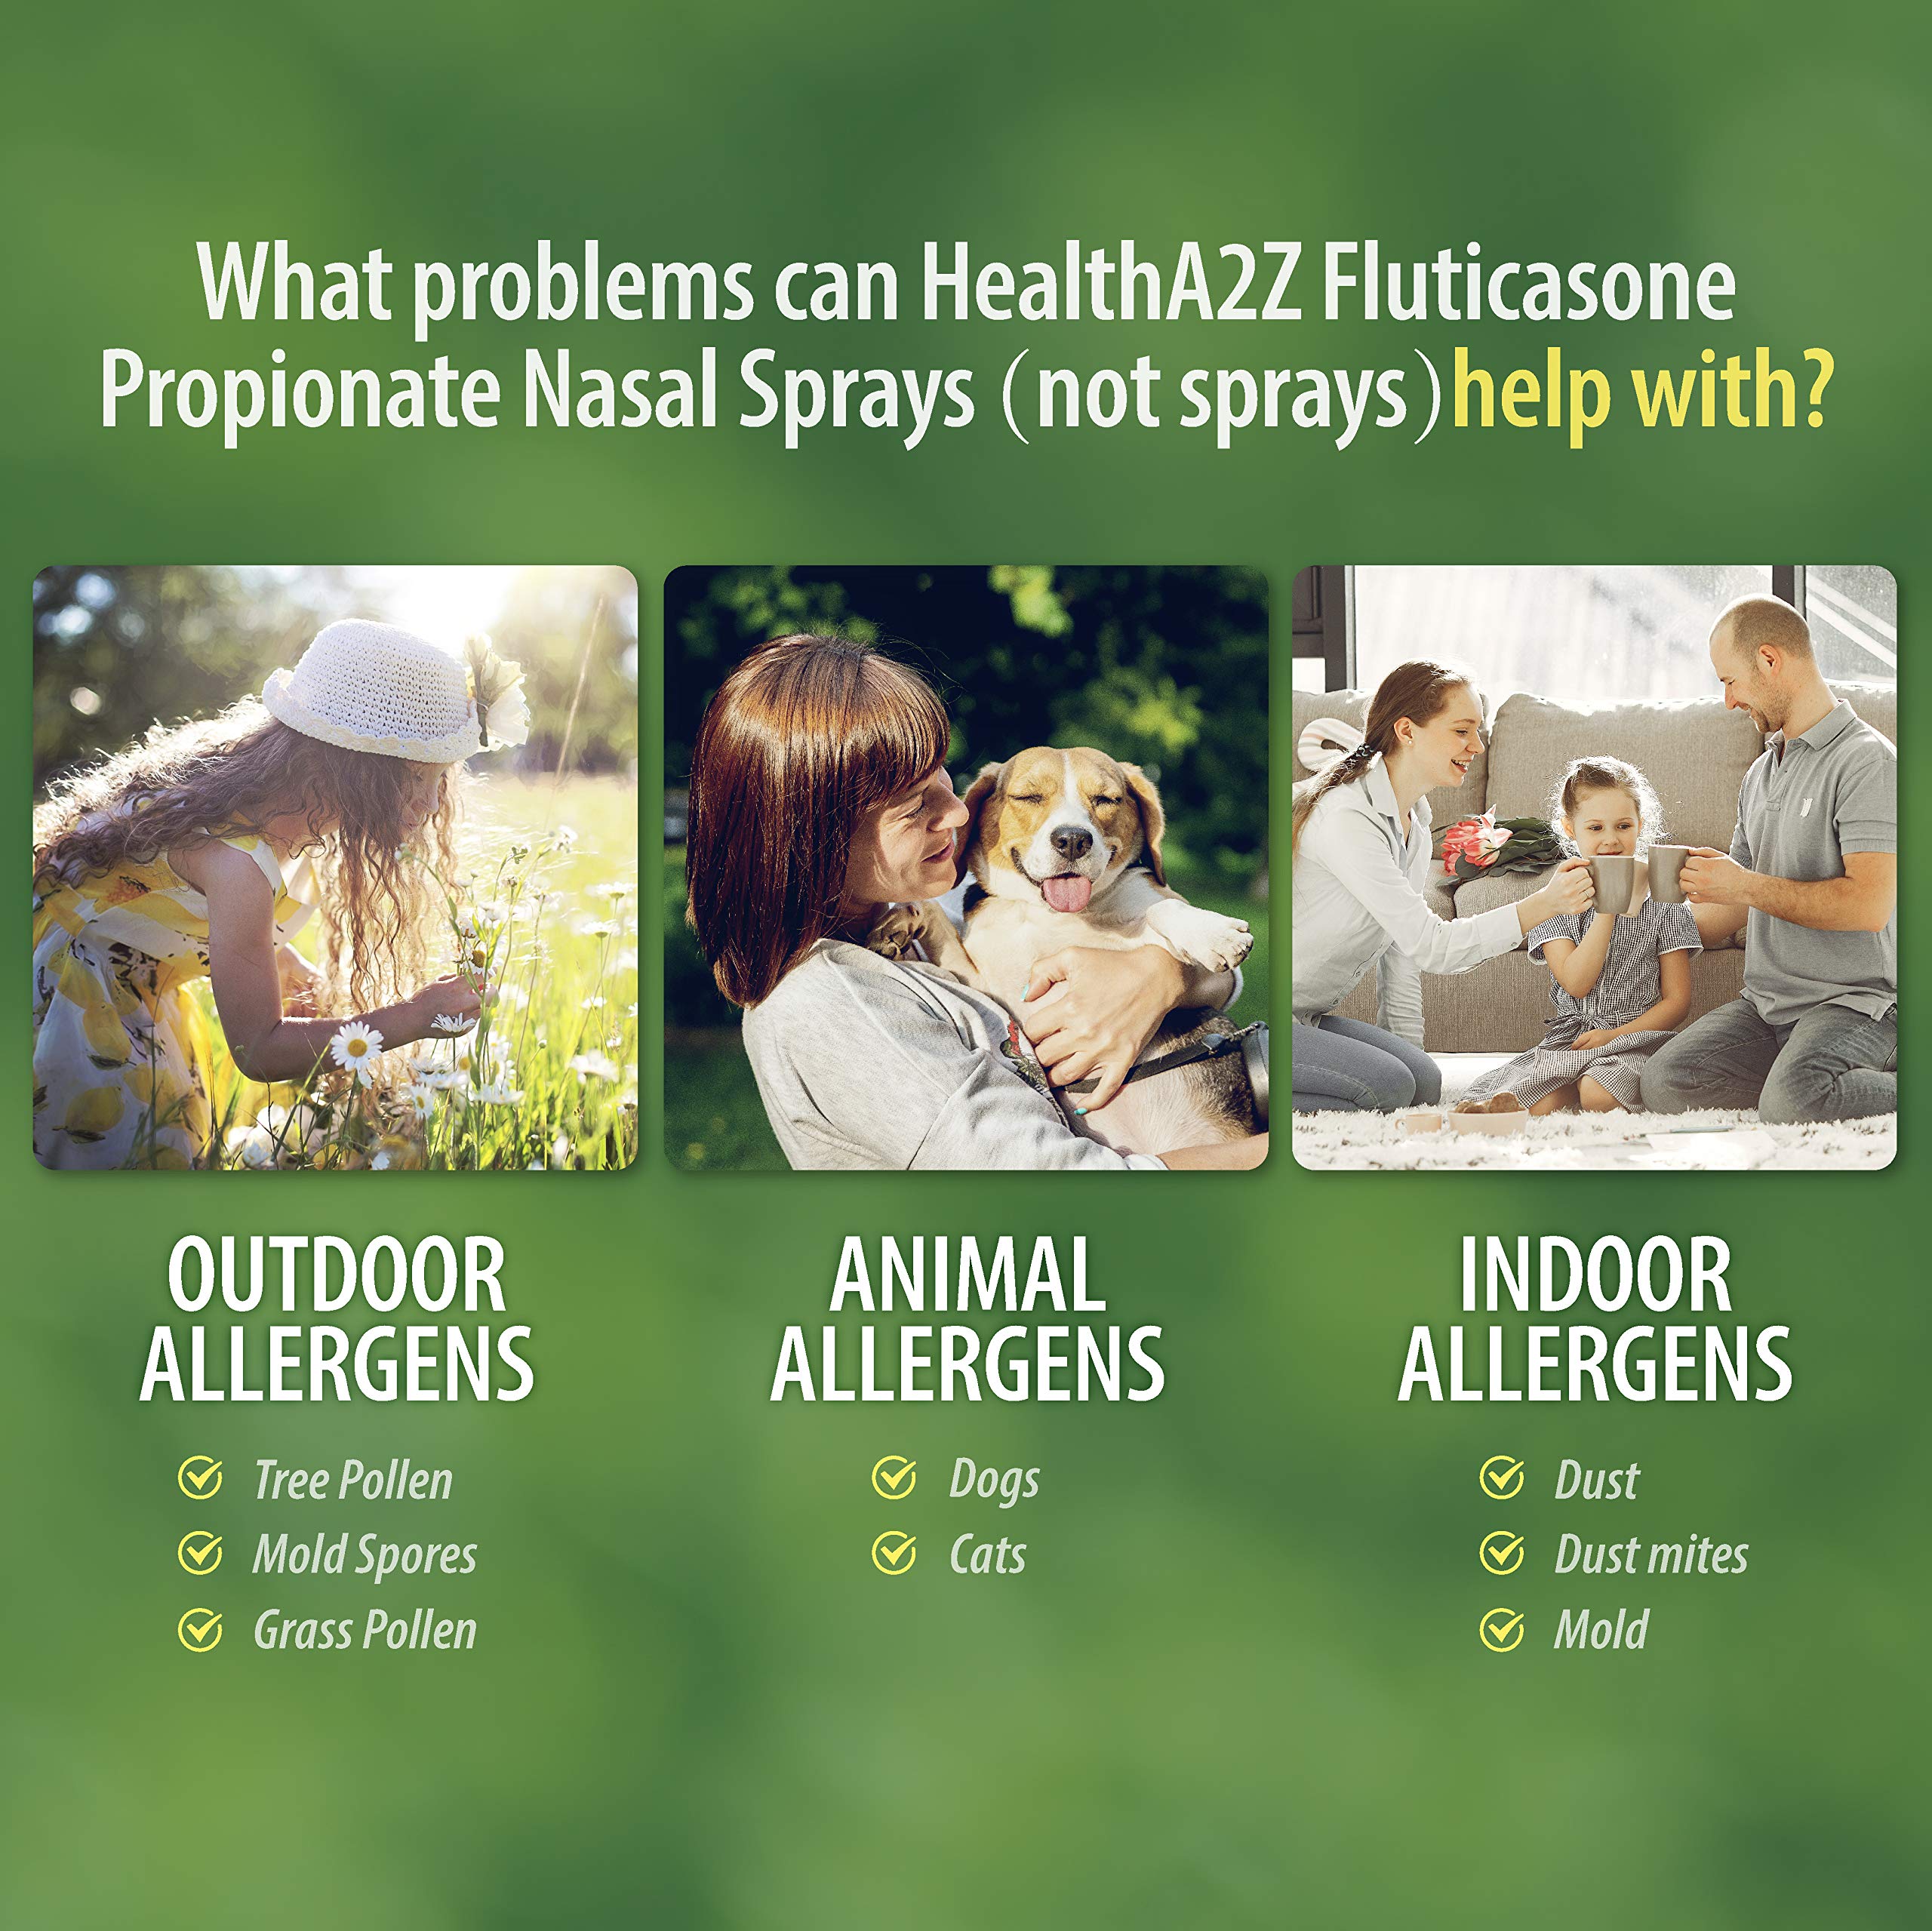 HealthA2Z Fluticasone Propionate Nasal Sprays, 24 Hour Allergy Relief,120 Sprays, 0.54 fl oz